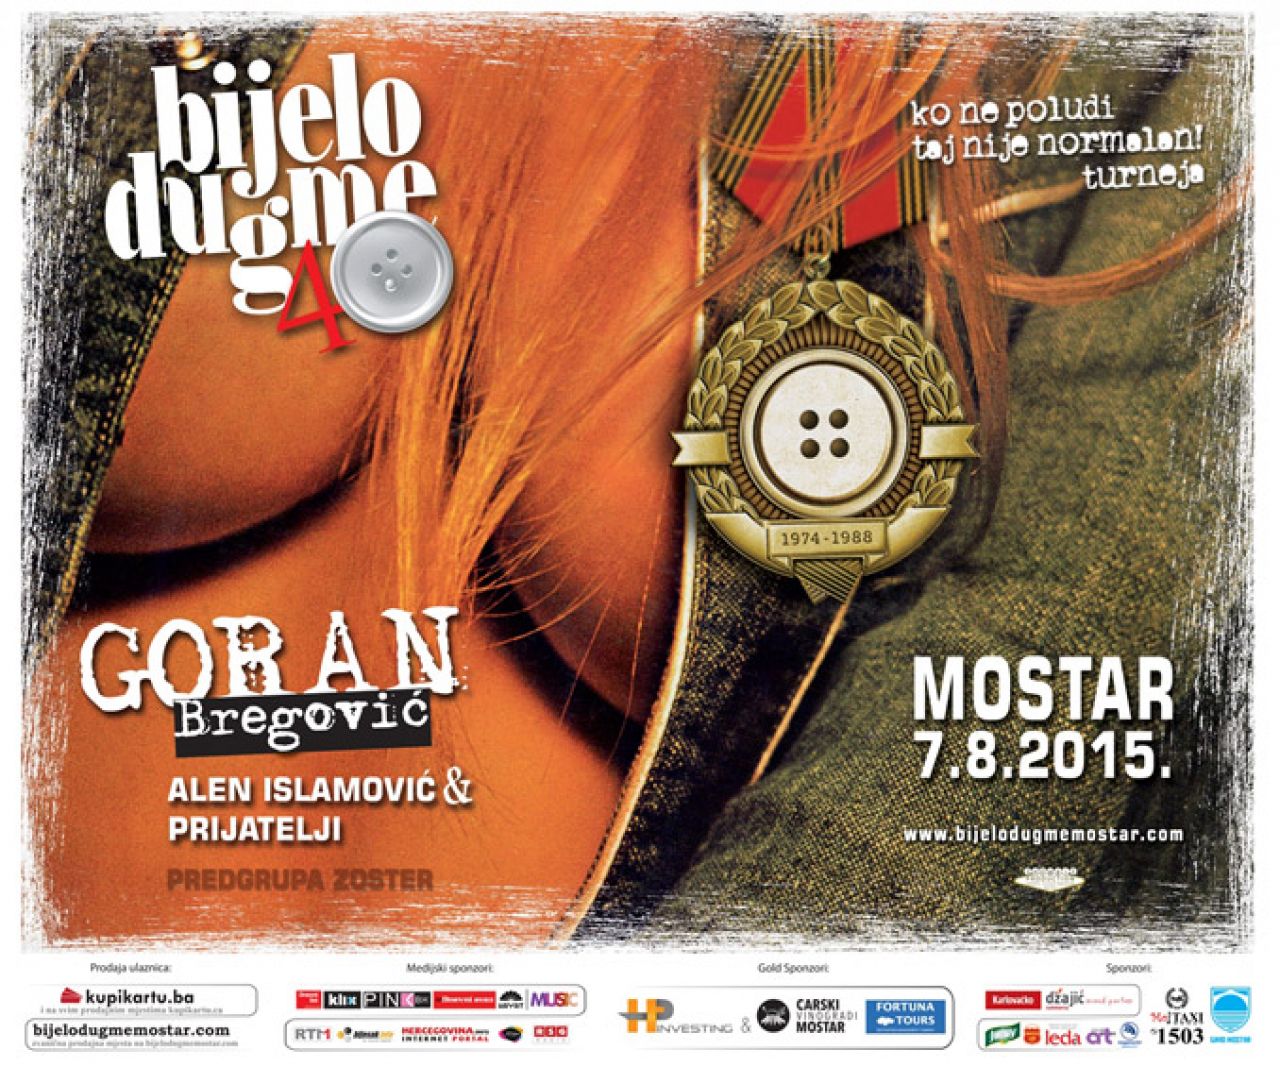 Pogledajte kako je Goran Bregović pozvao fanove na koncert u Mostaru